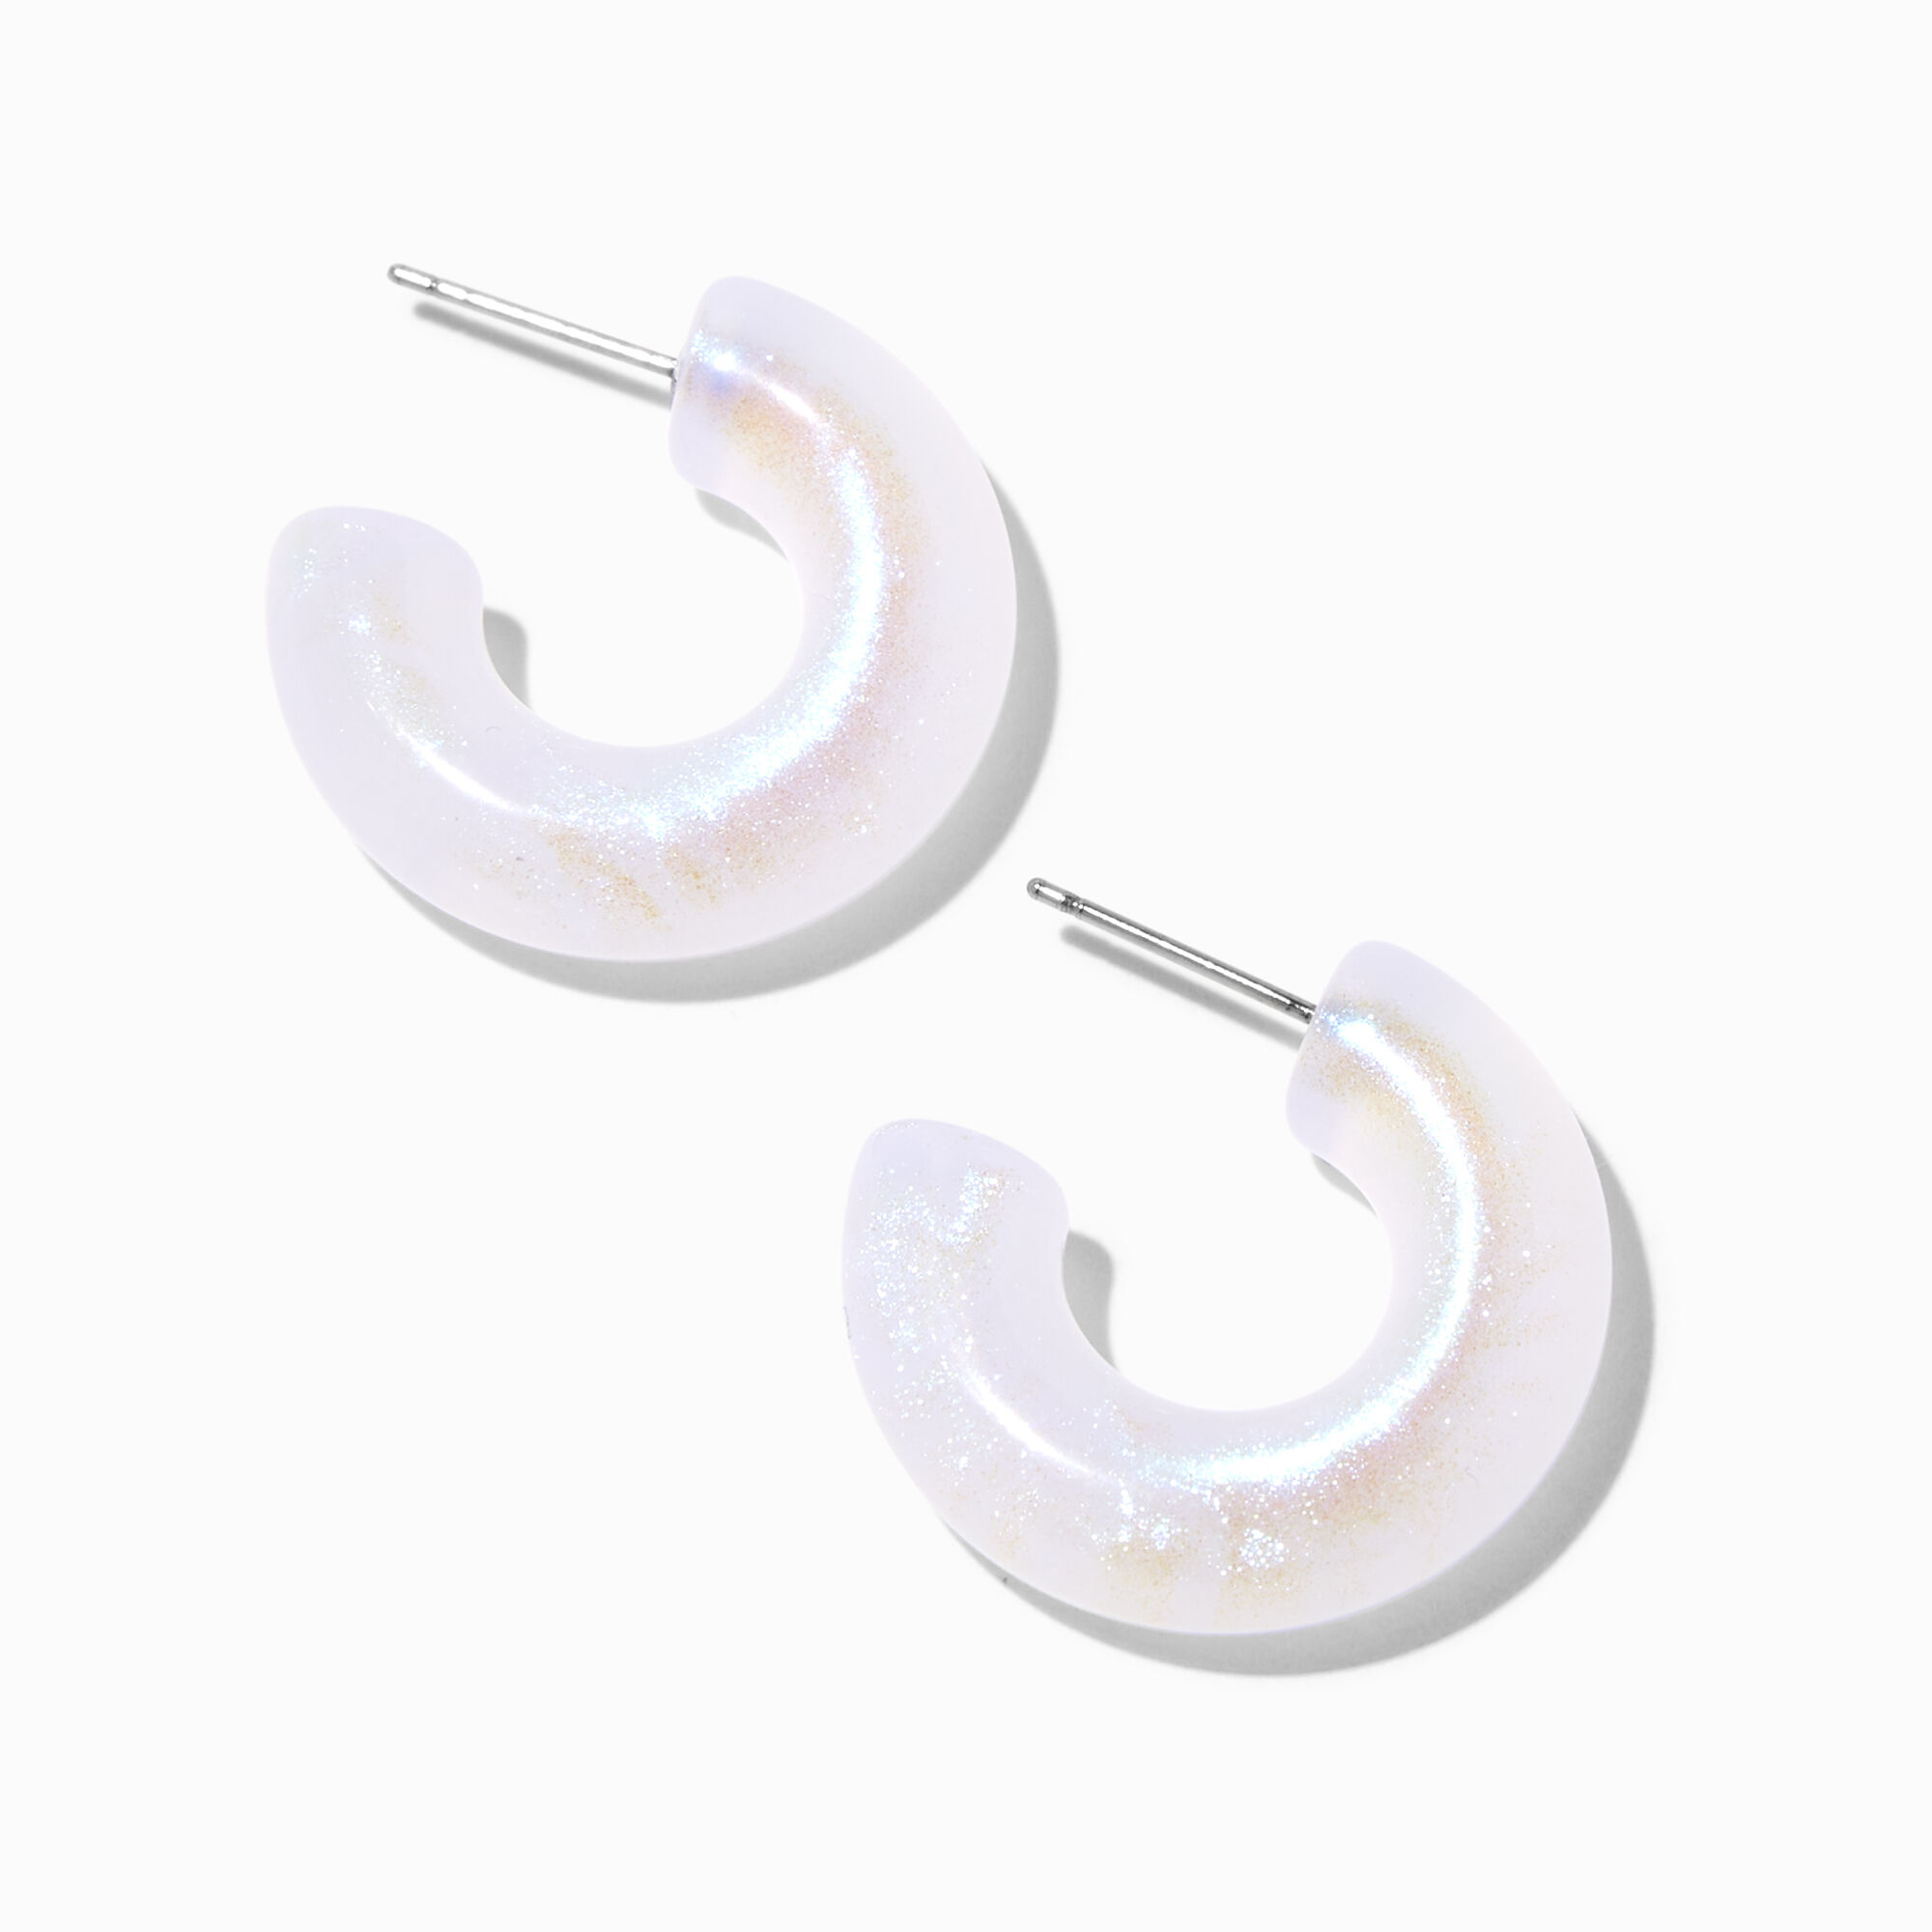 Acrylic Hoops Earrings | Resin Hoops Earrings | Big Green Earrings |  Acrylic Jewelry - Hoop Earrings - Aliexpress